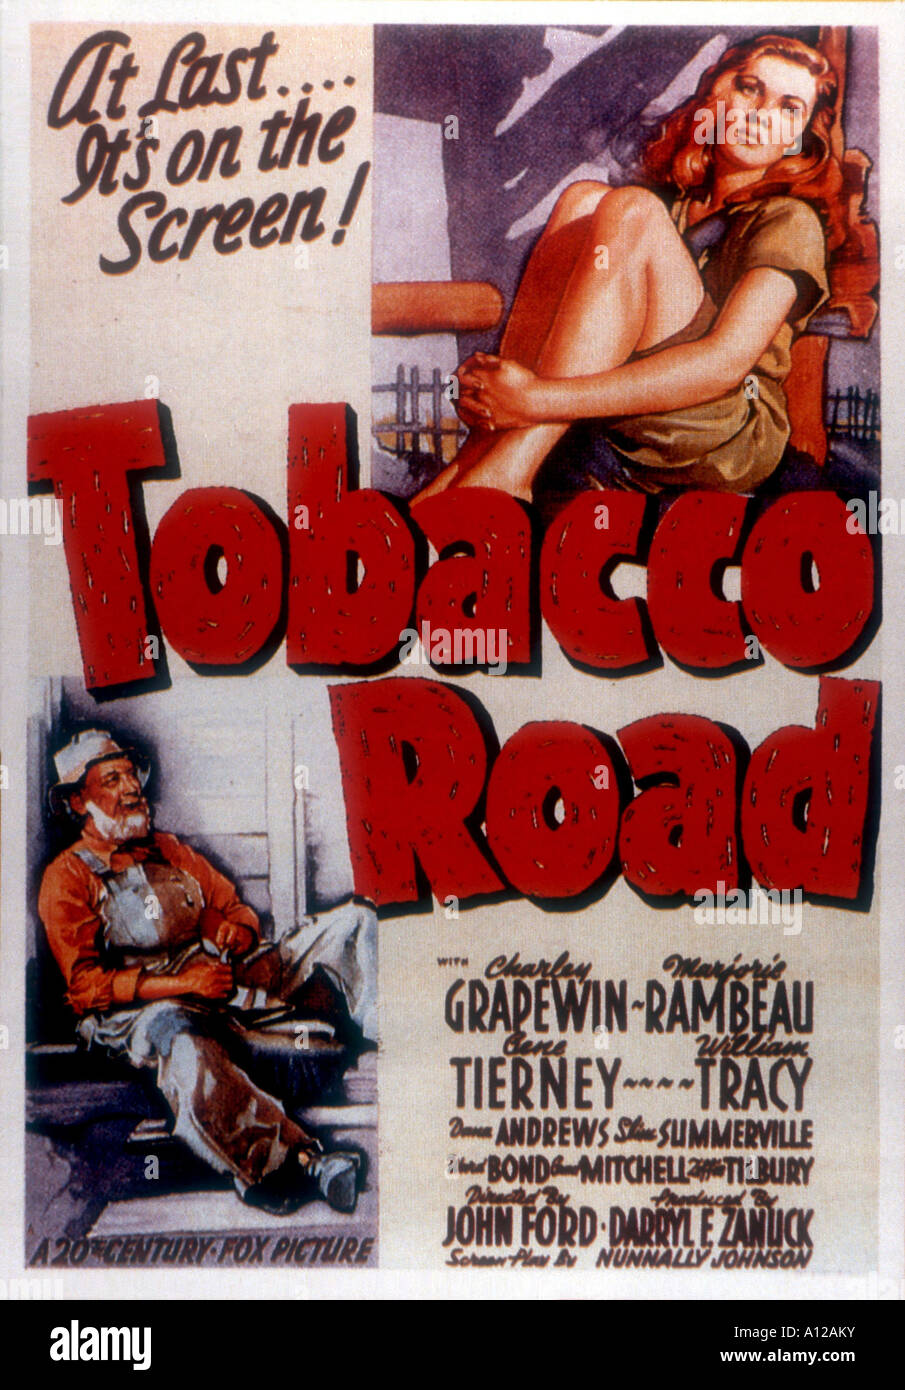 La route du tabac Année 1941 réalisateur John Ford Charley Grapewin basé sur Erskine Caldwell s'affiche de film livre Banque D'Images